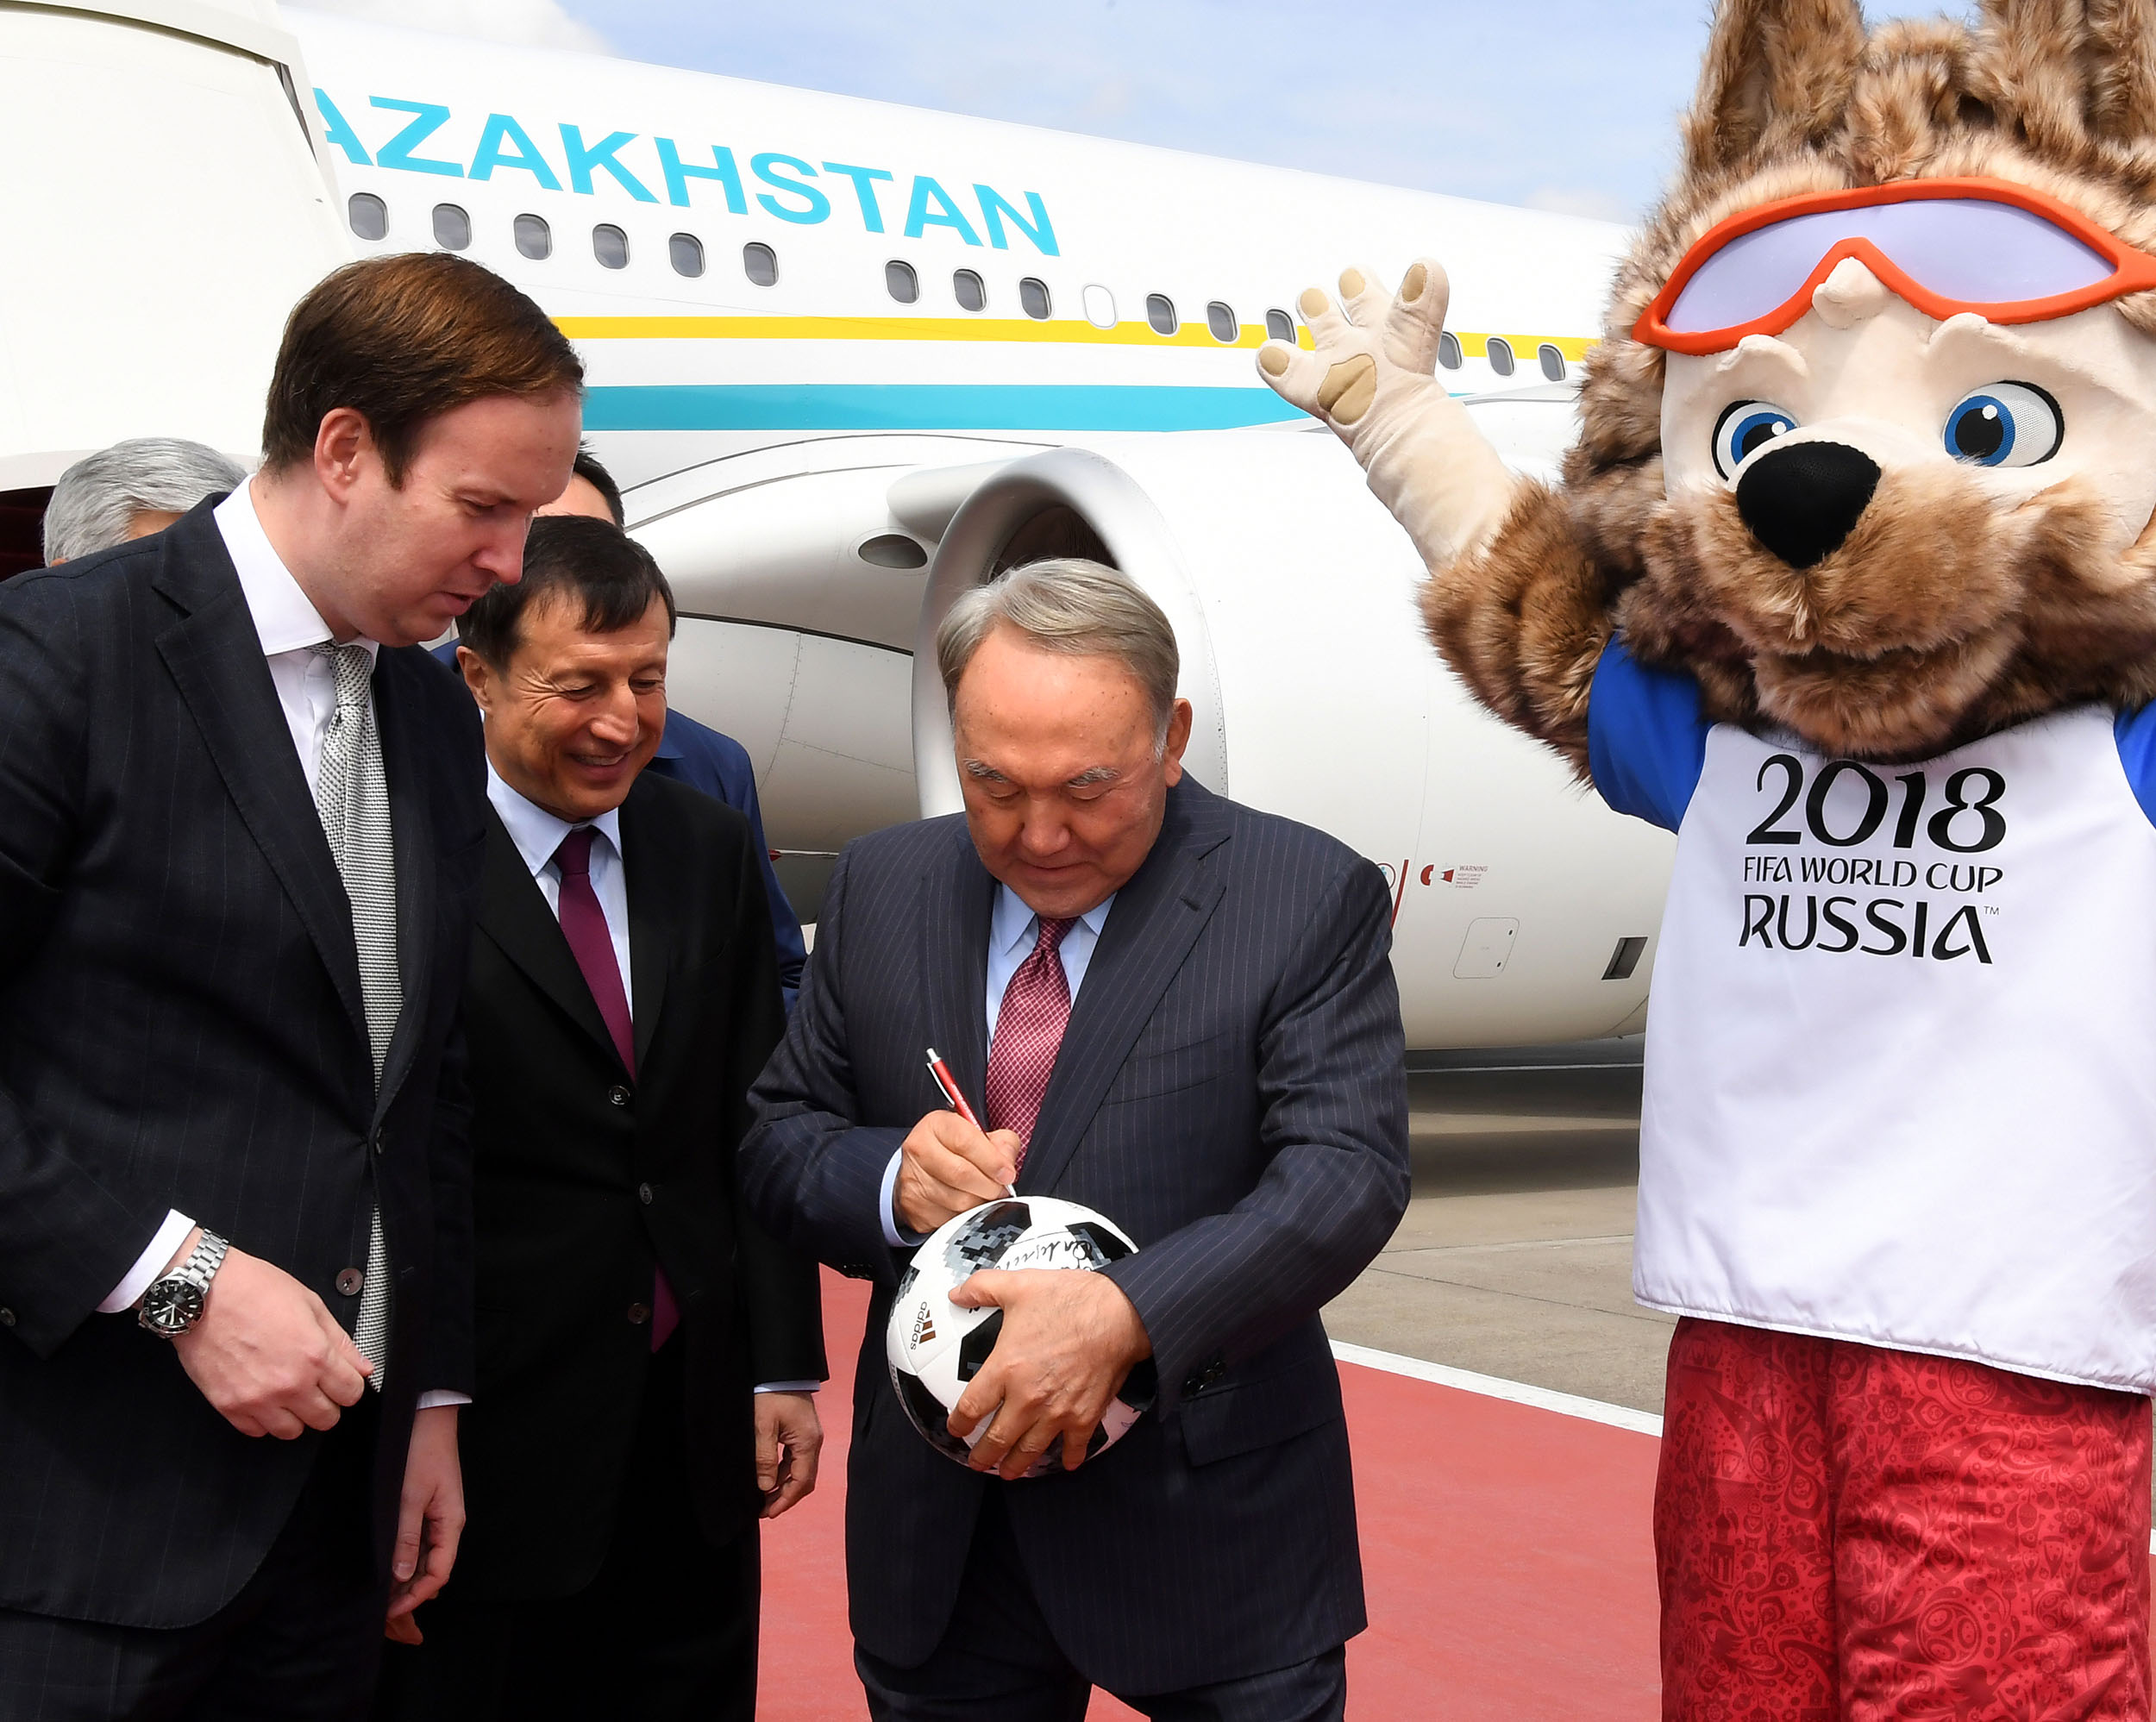 Қазақстан Президенті Нұрсұлтан Назарбаев футболдан 2018 жылғы әлем чемпионатының ашылу рәсіміне қатысты.